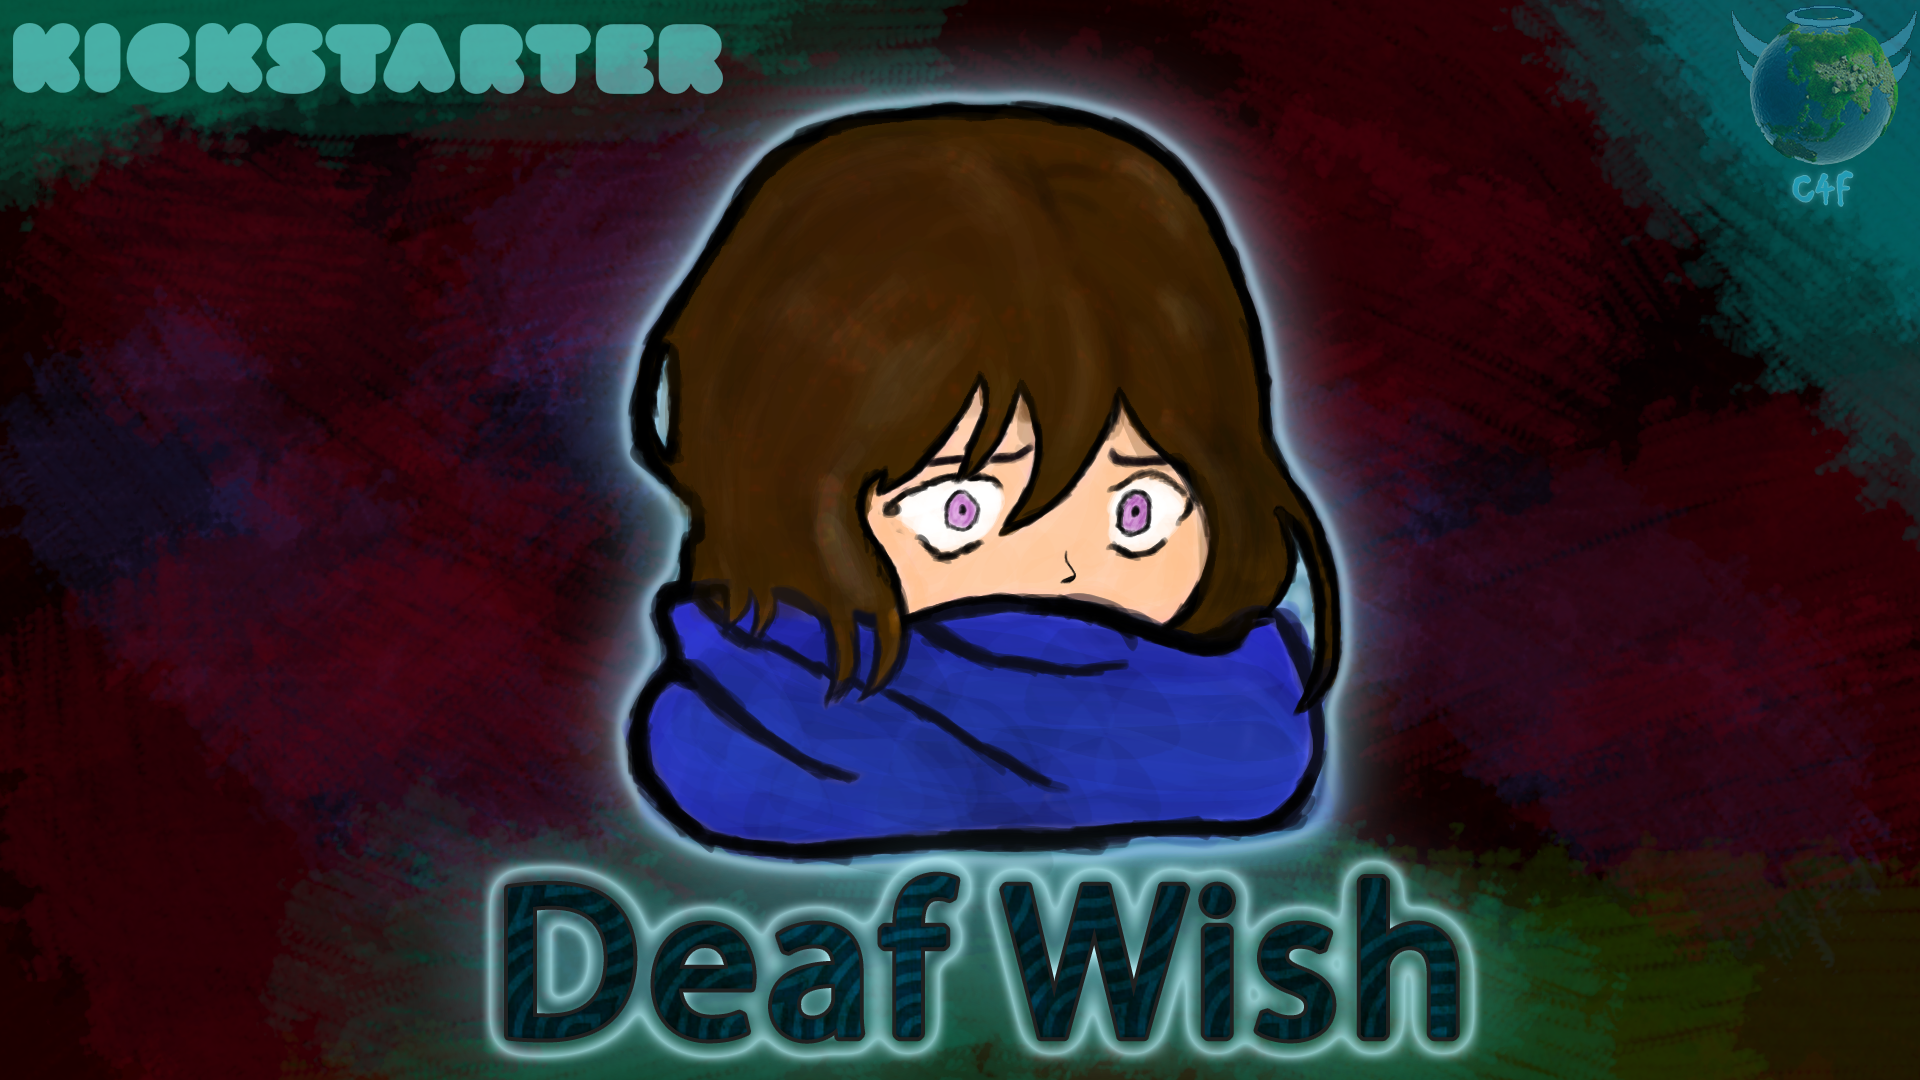 Deaf Wish